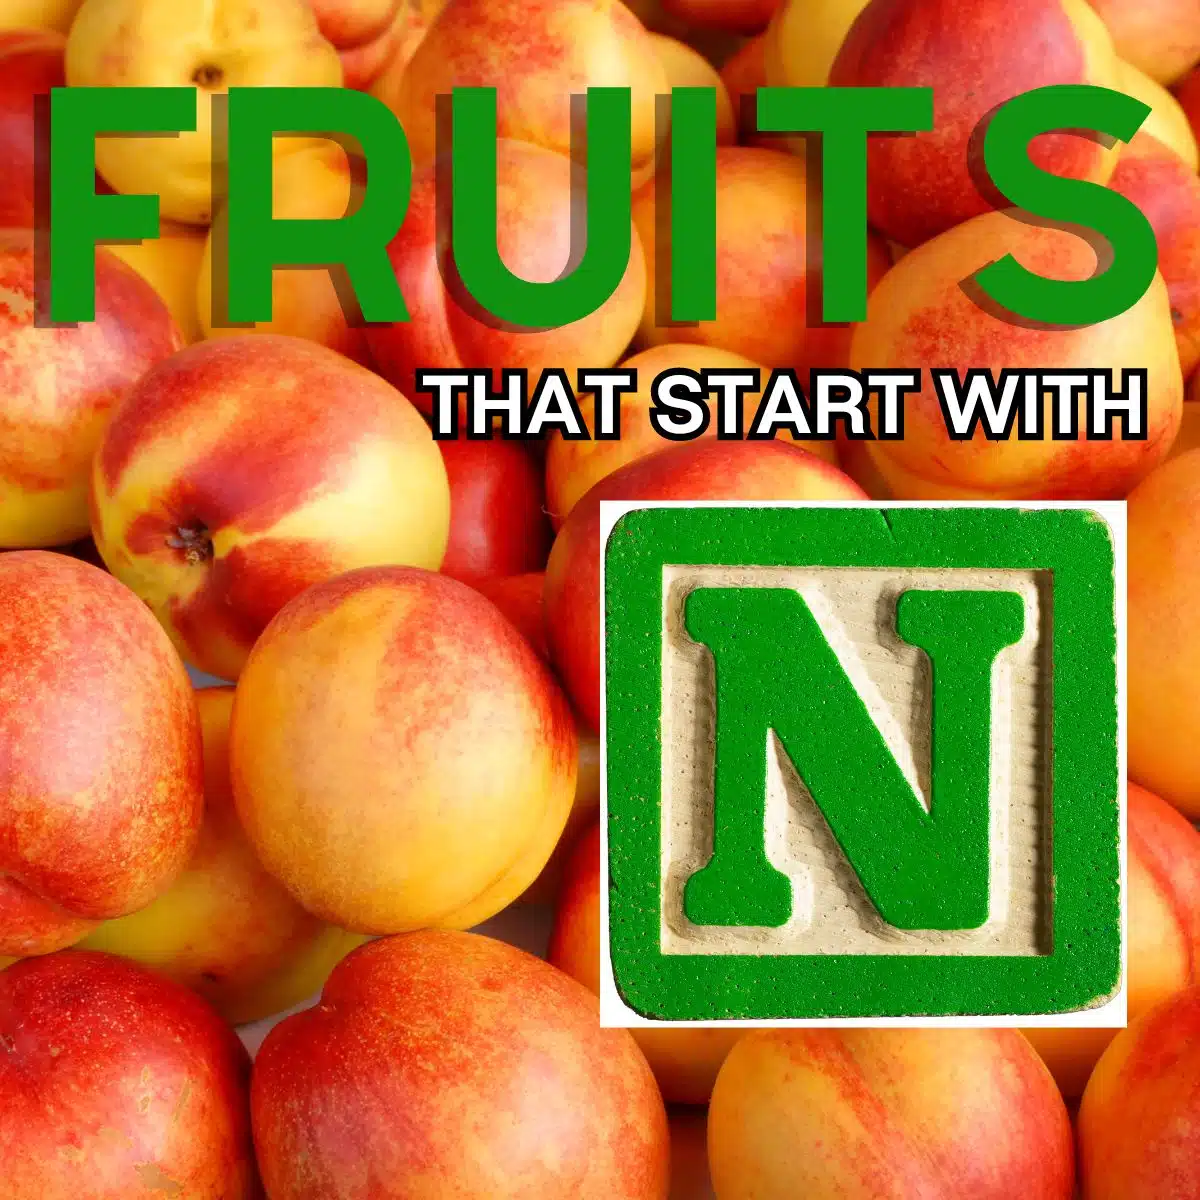 Čtvercový obrázek pro ovoce začínající na N s nektarinkami.